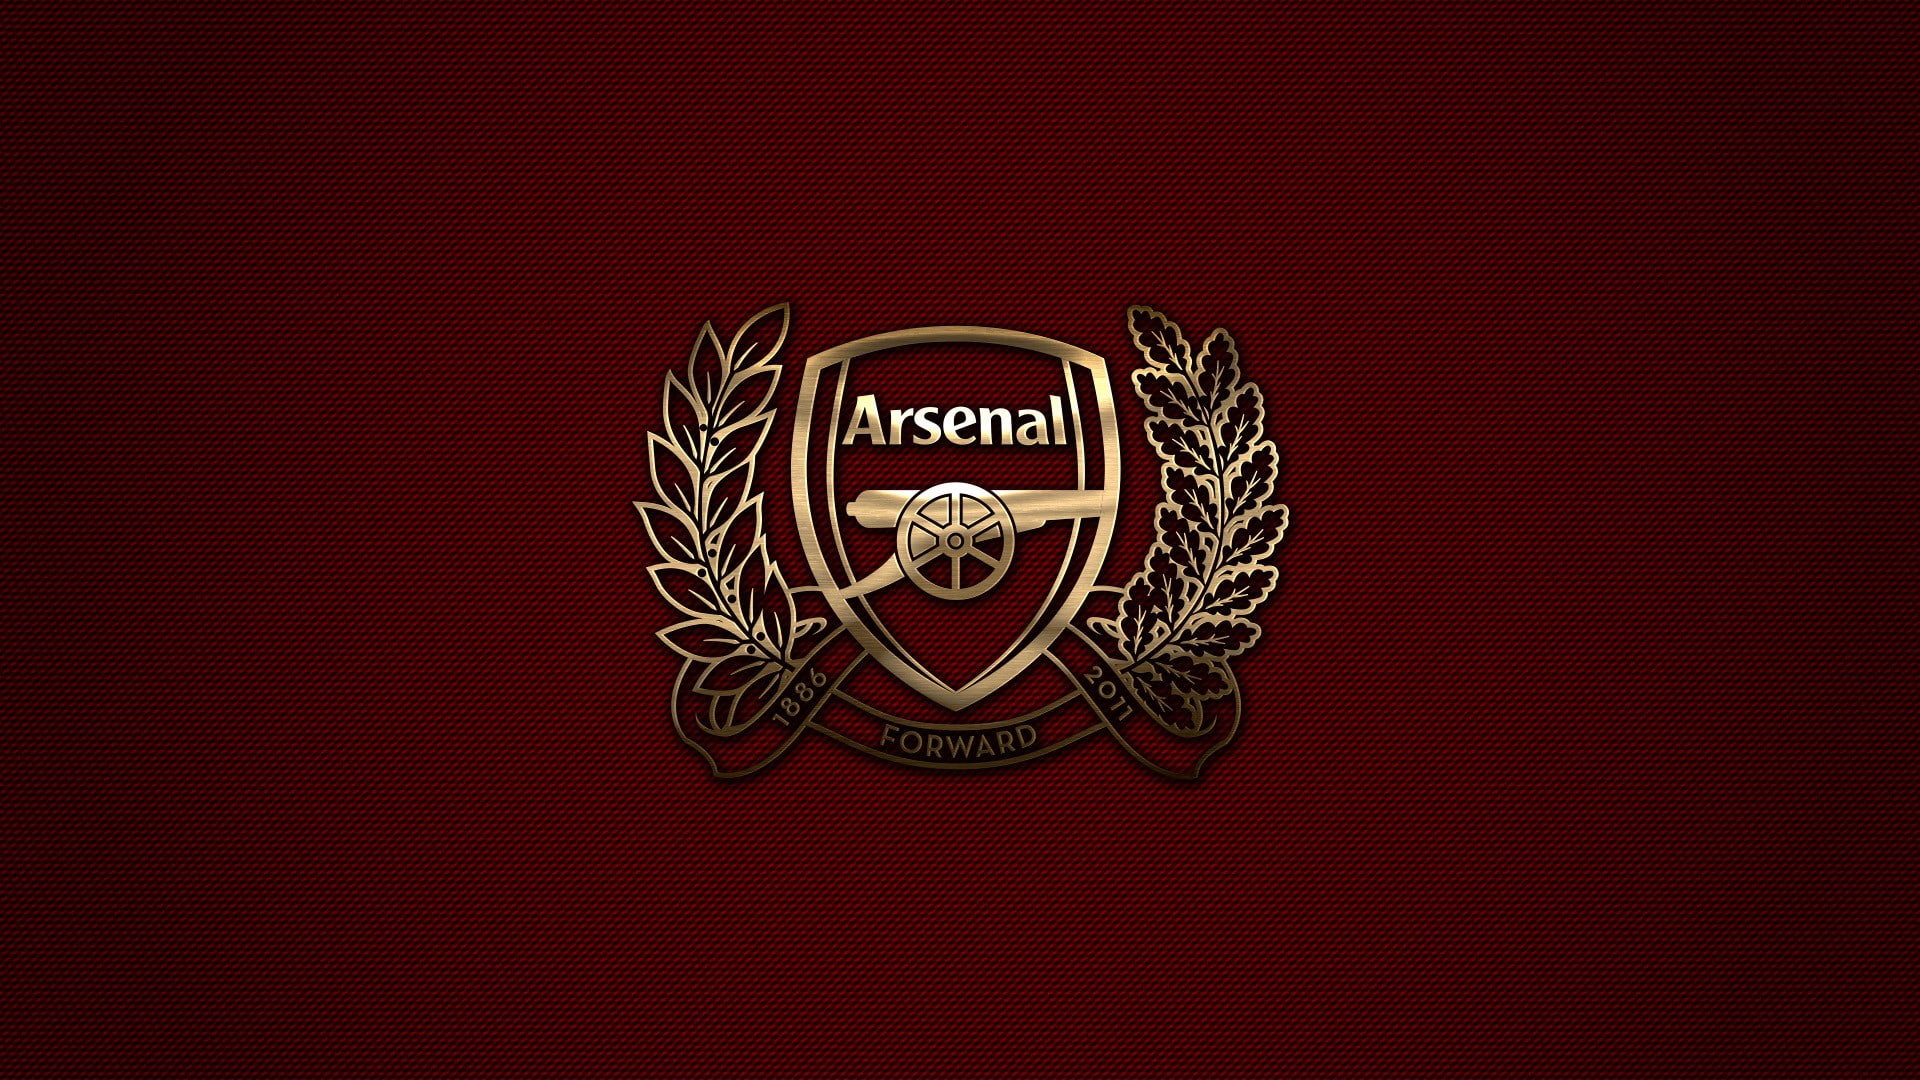 Arsenal Fc, Arsenal London, Premier League, Sports Club